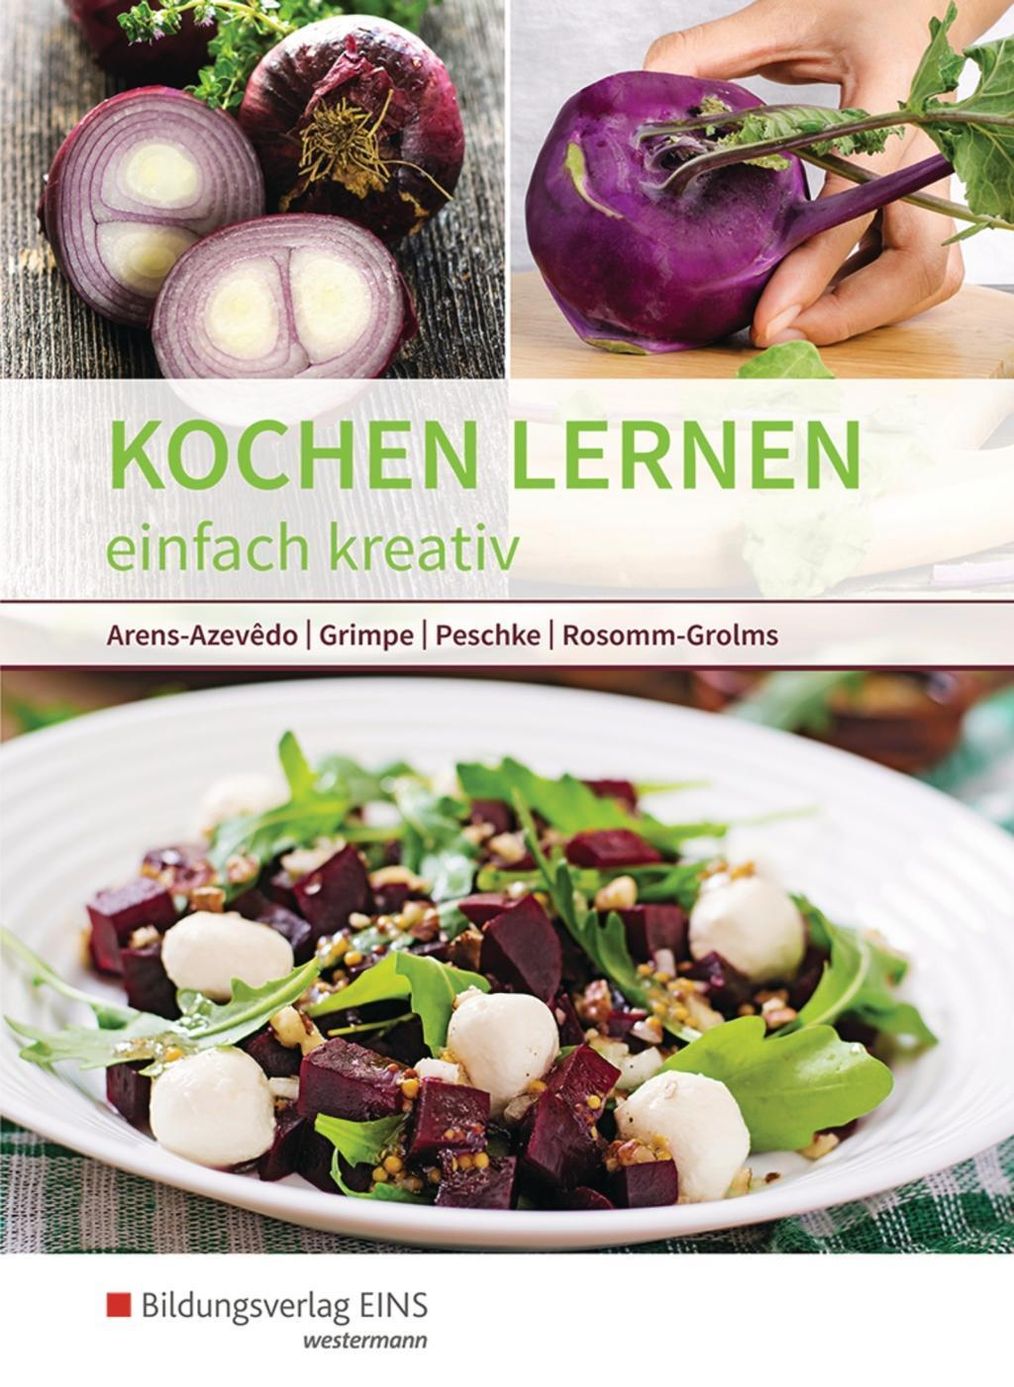 Kochen lernen Buch von Ulrike Arens-Azevêdo versandkostenfrei bestellen